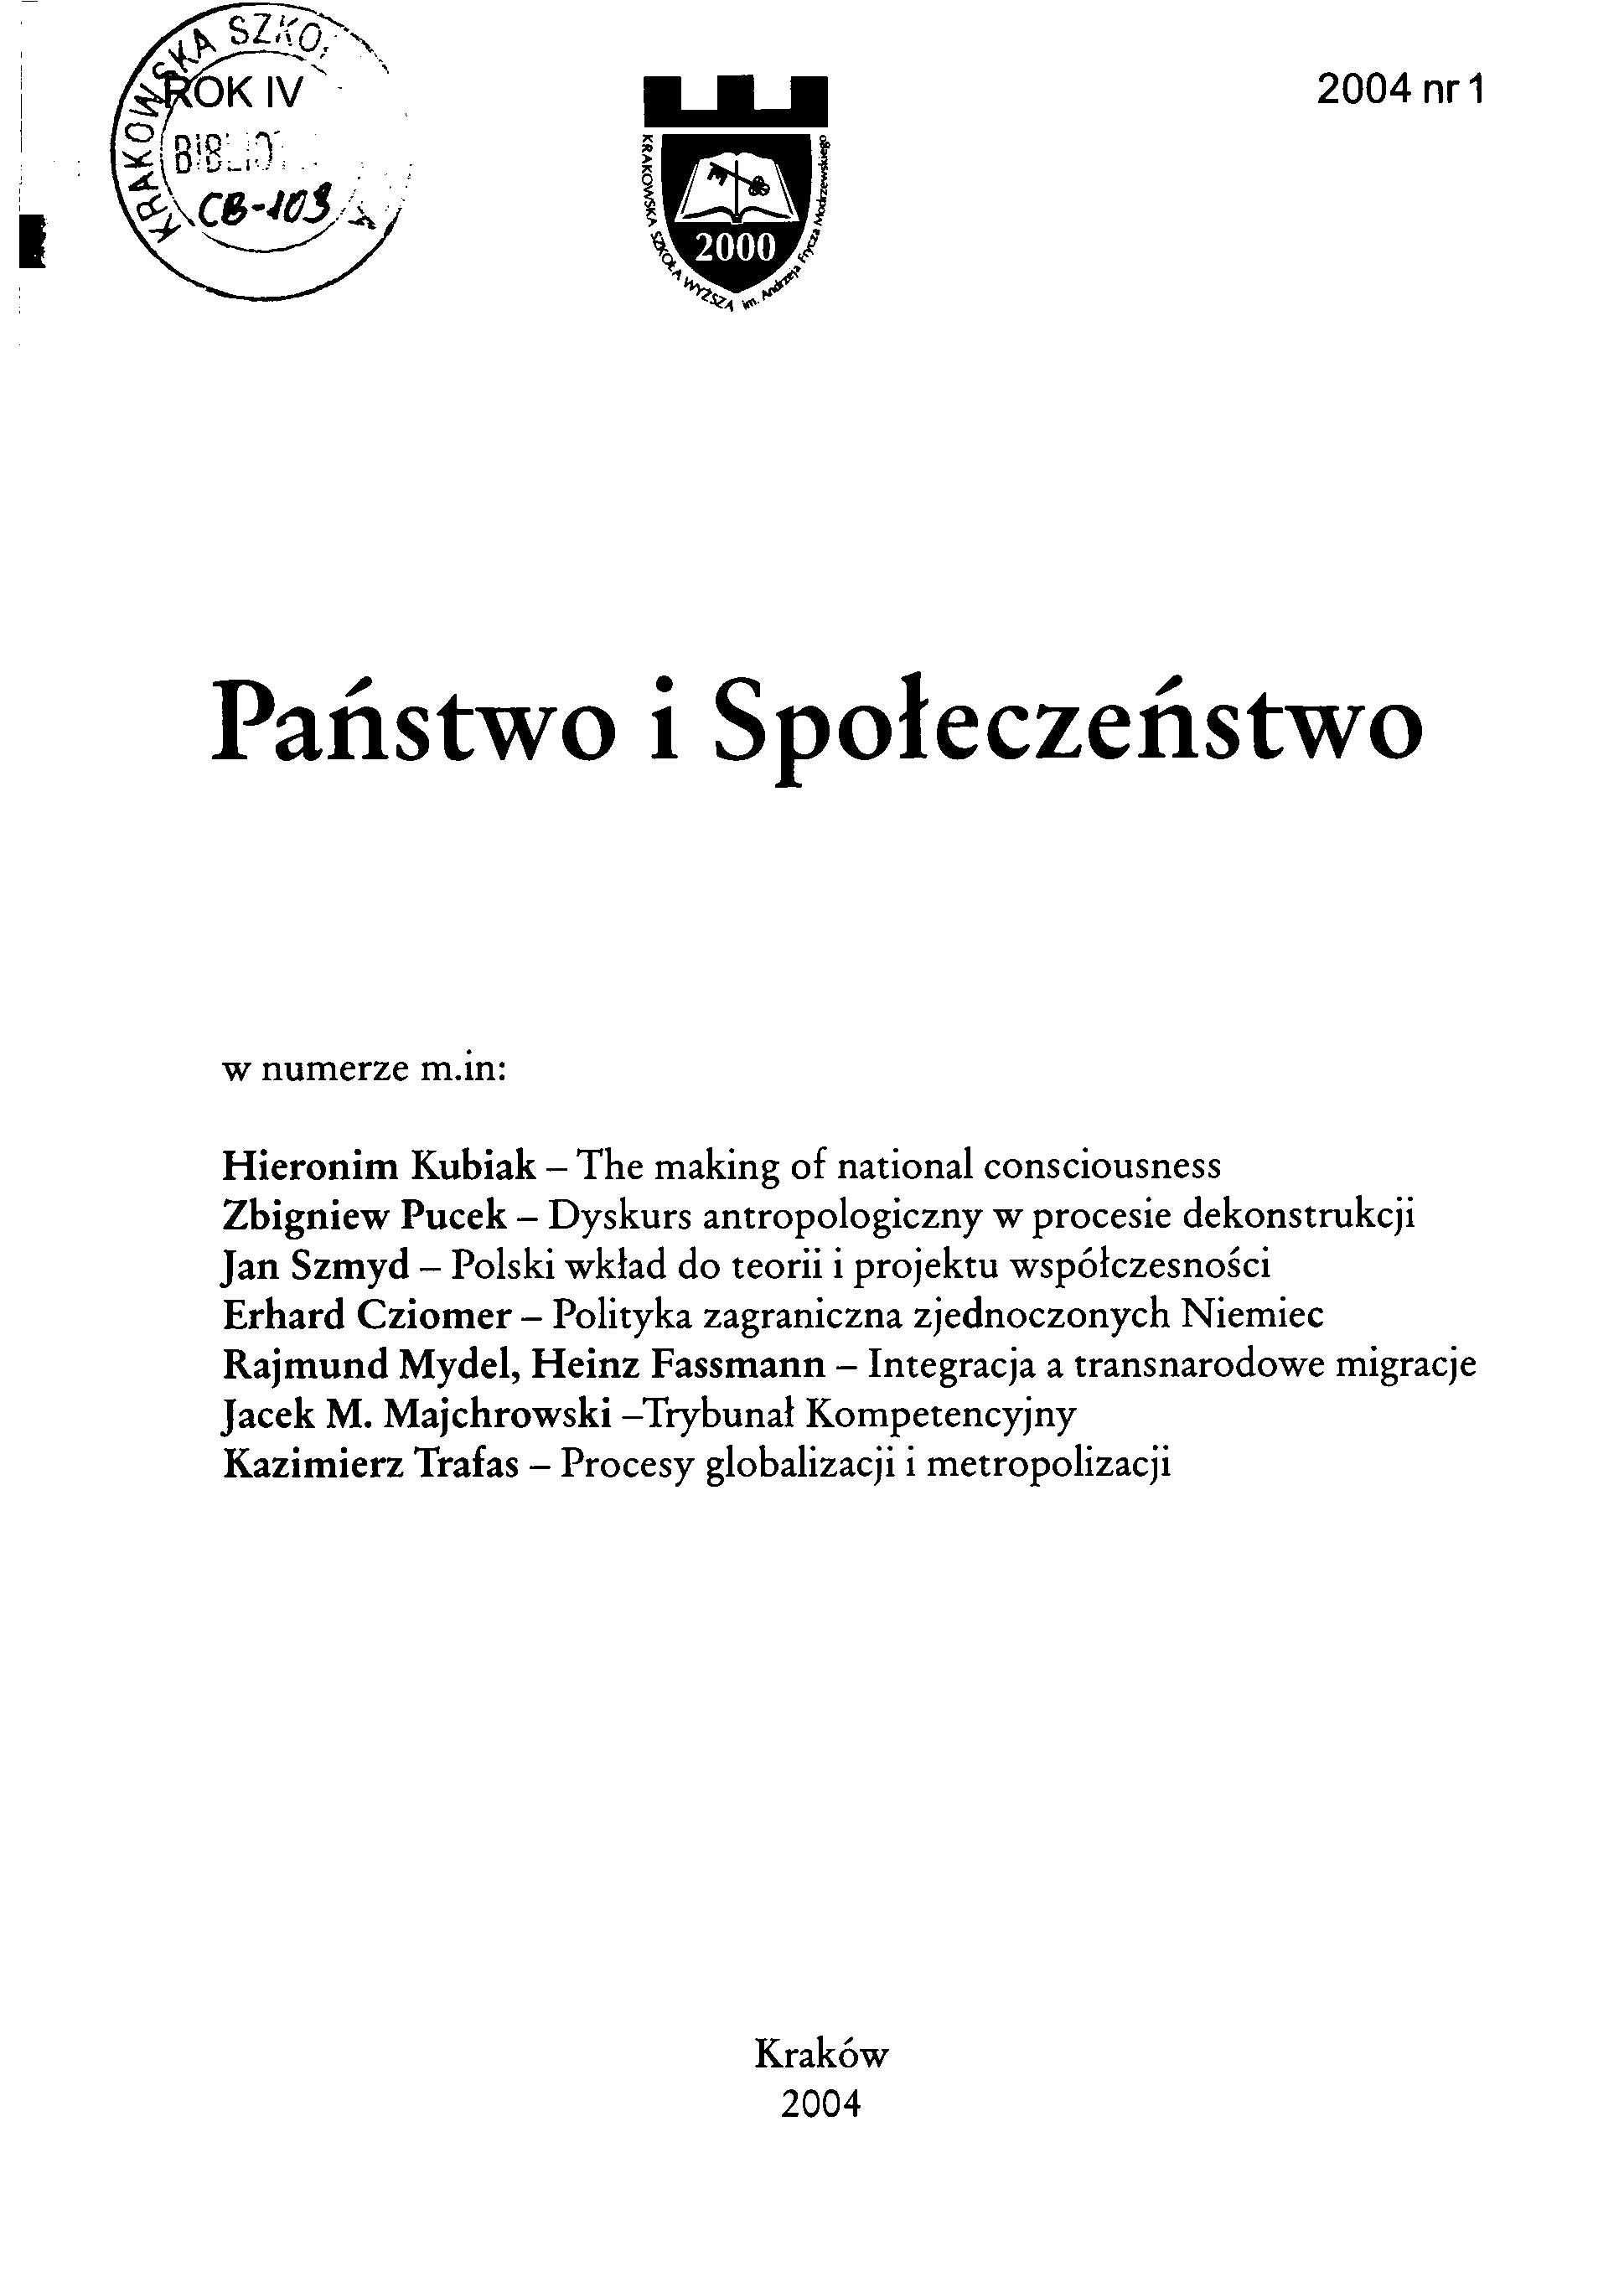 Piotr Kasprzyk, Separacja prawna małżonków (Wydawnictwo KUL Lublin 2003, ss. 318)